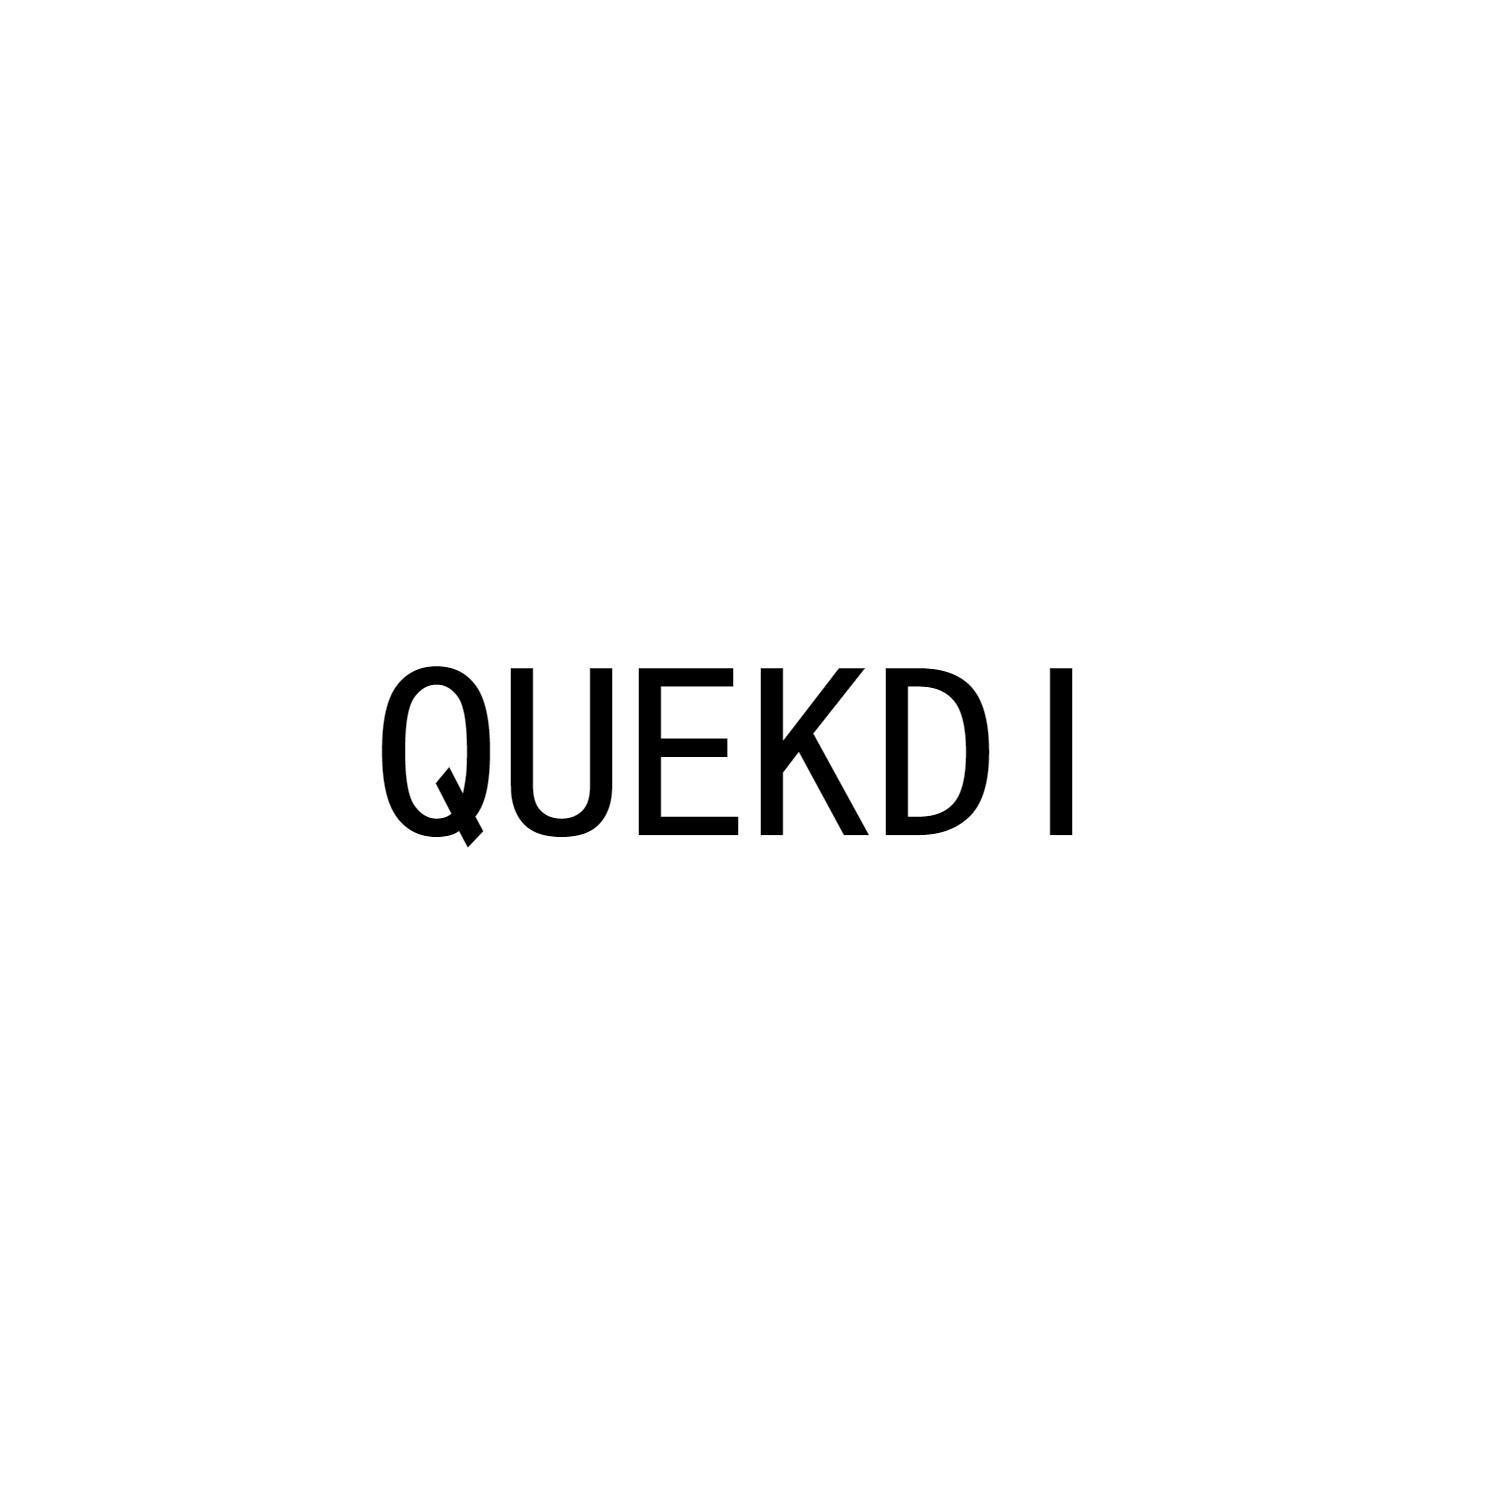 QUEKDI